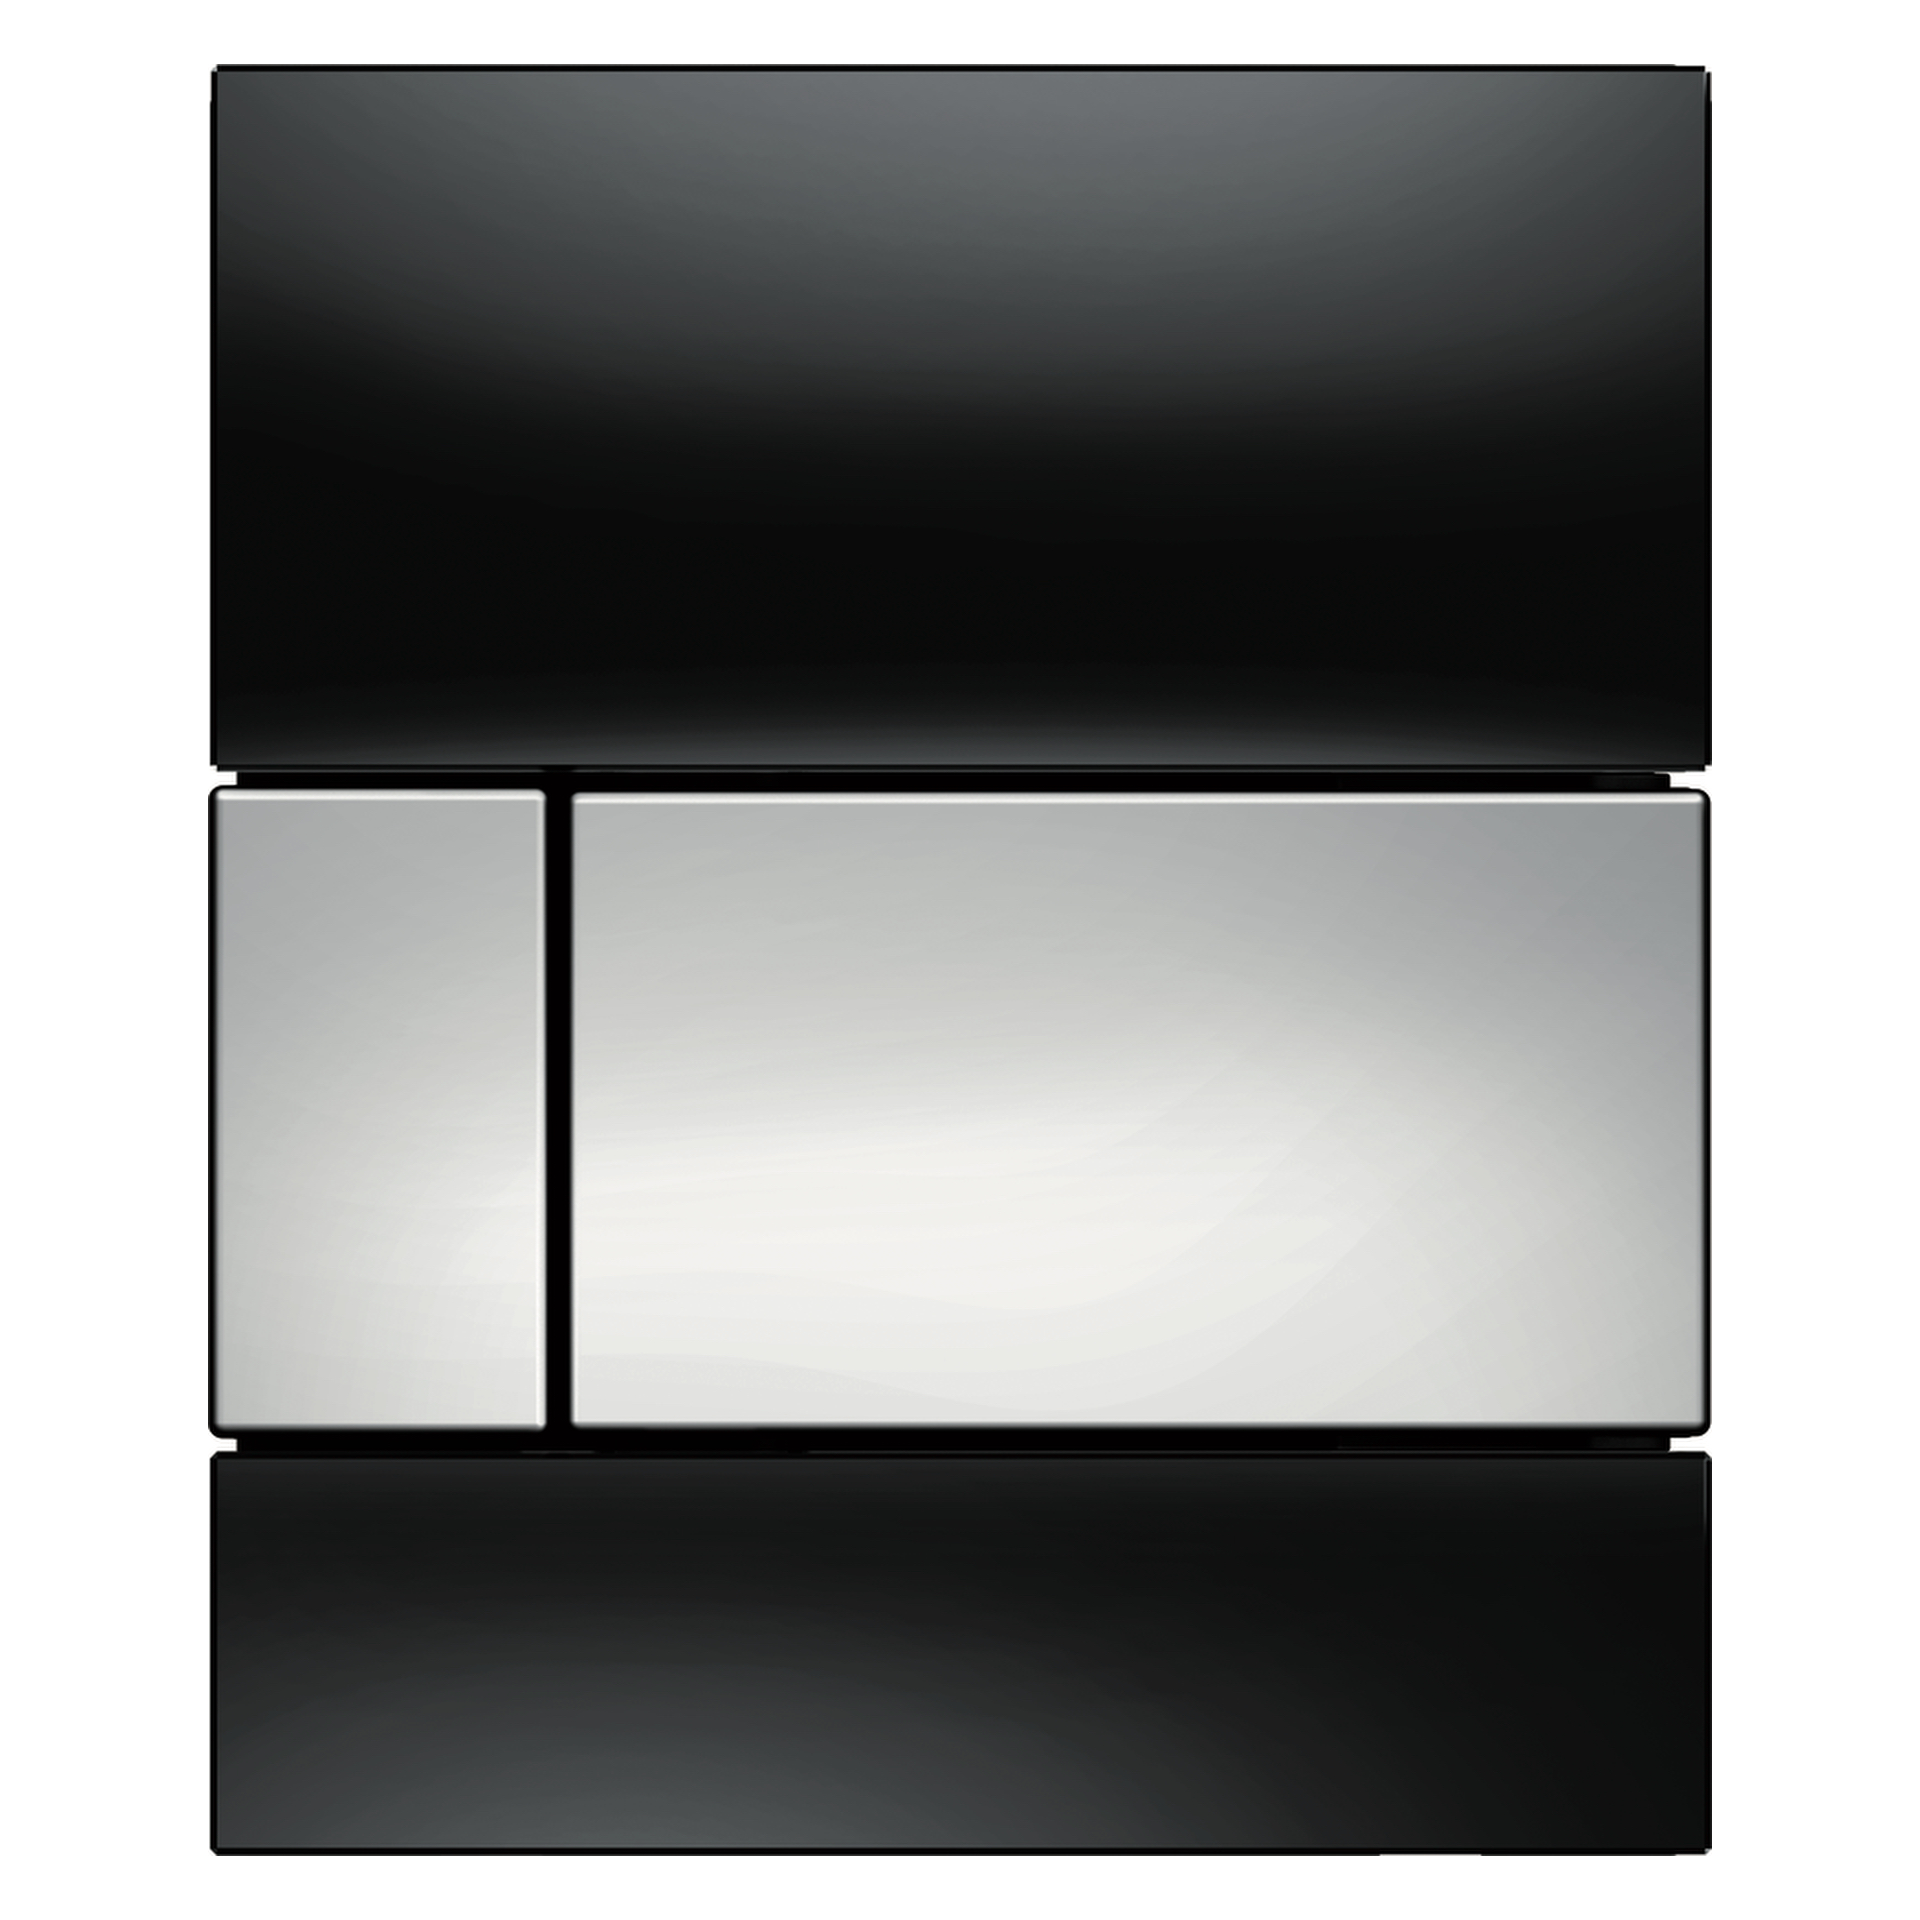 TECEsquare Urinal-Betätigungsplatte mit Kartusche Glas schwarz, Taste Chrom glänzend